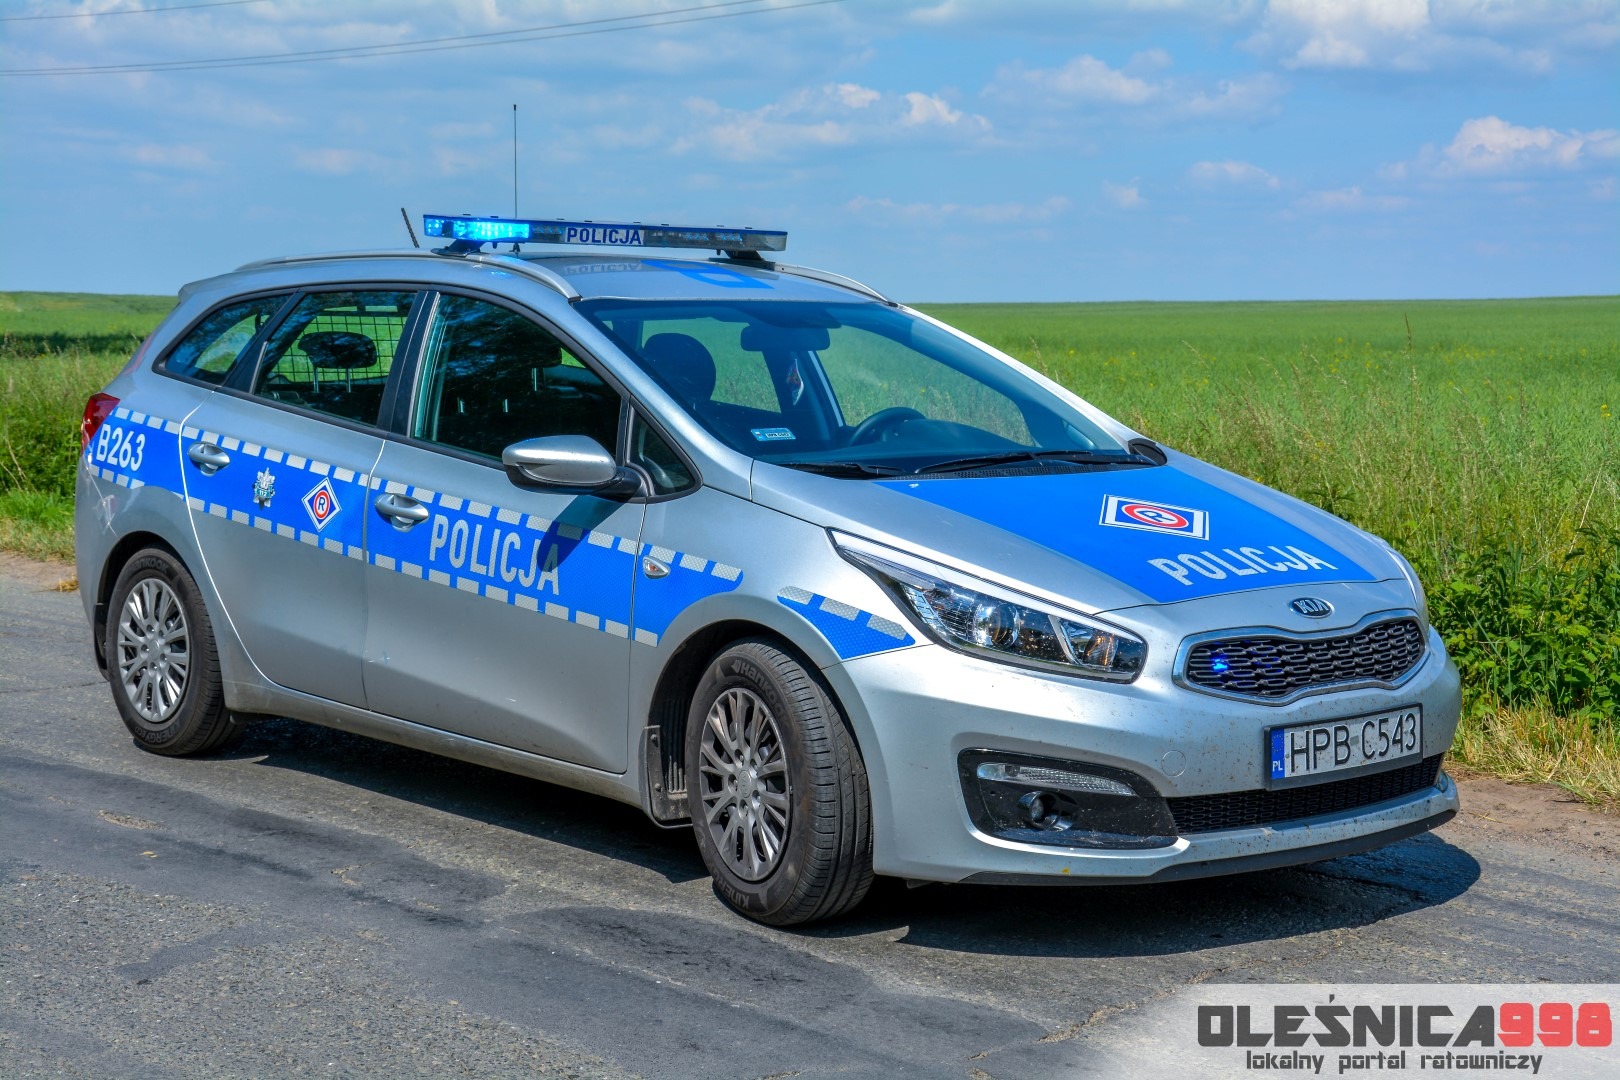 Nowe radiowozy dla Policji Oleśnica998